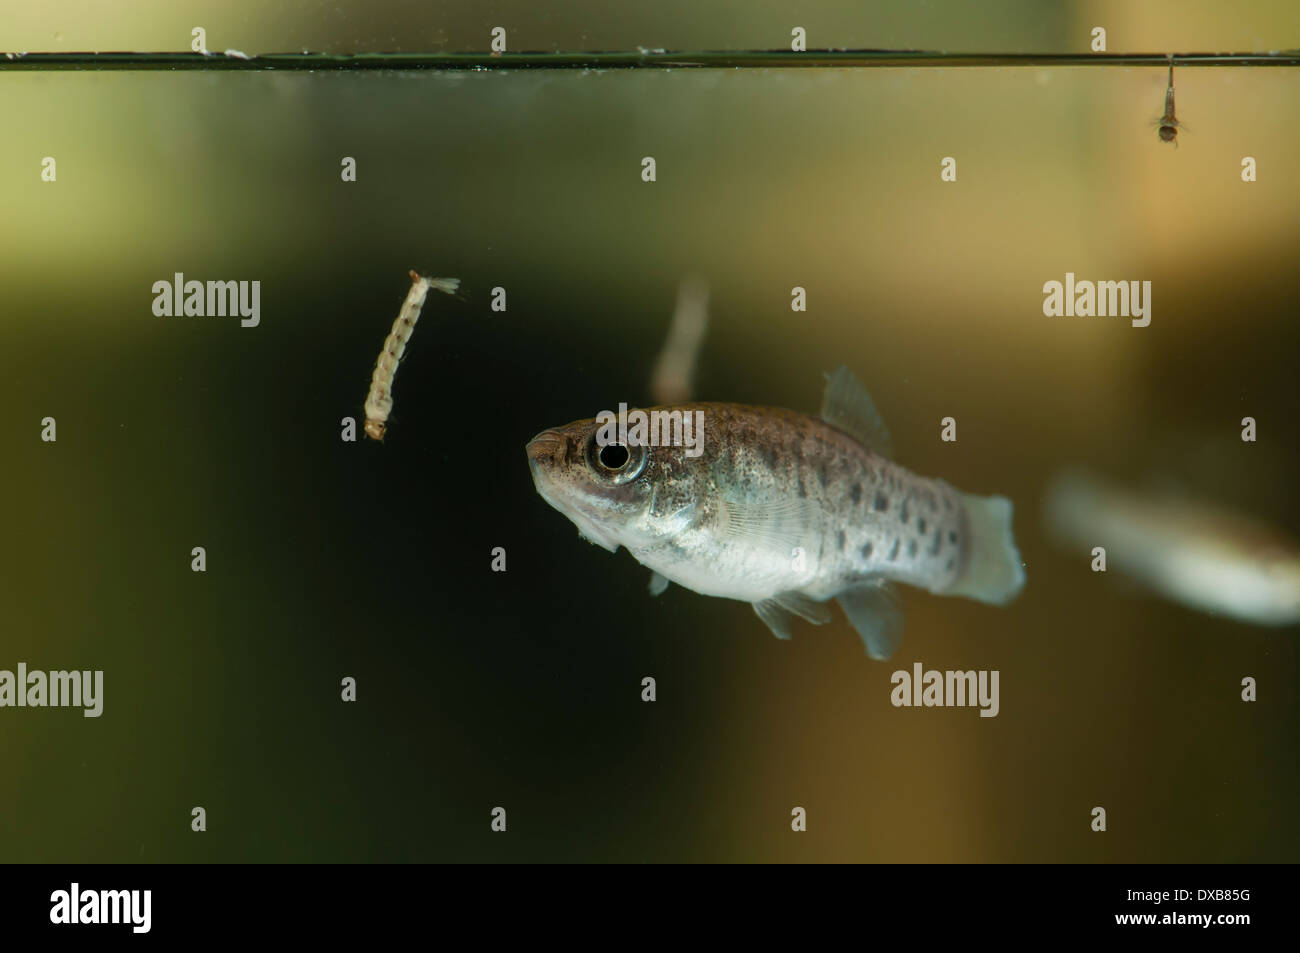 Aphanius iberus, autóctona mediterránea Mosquito-comiendo pescado amenazadas por la introducción de especies nos Gambusia atacando larvas Foto de stock